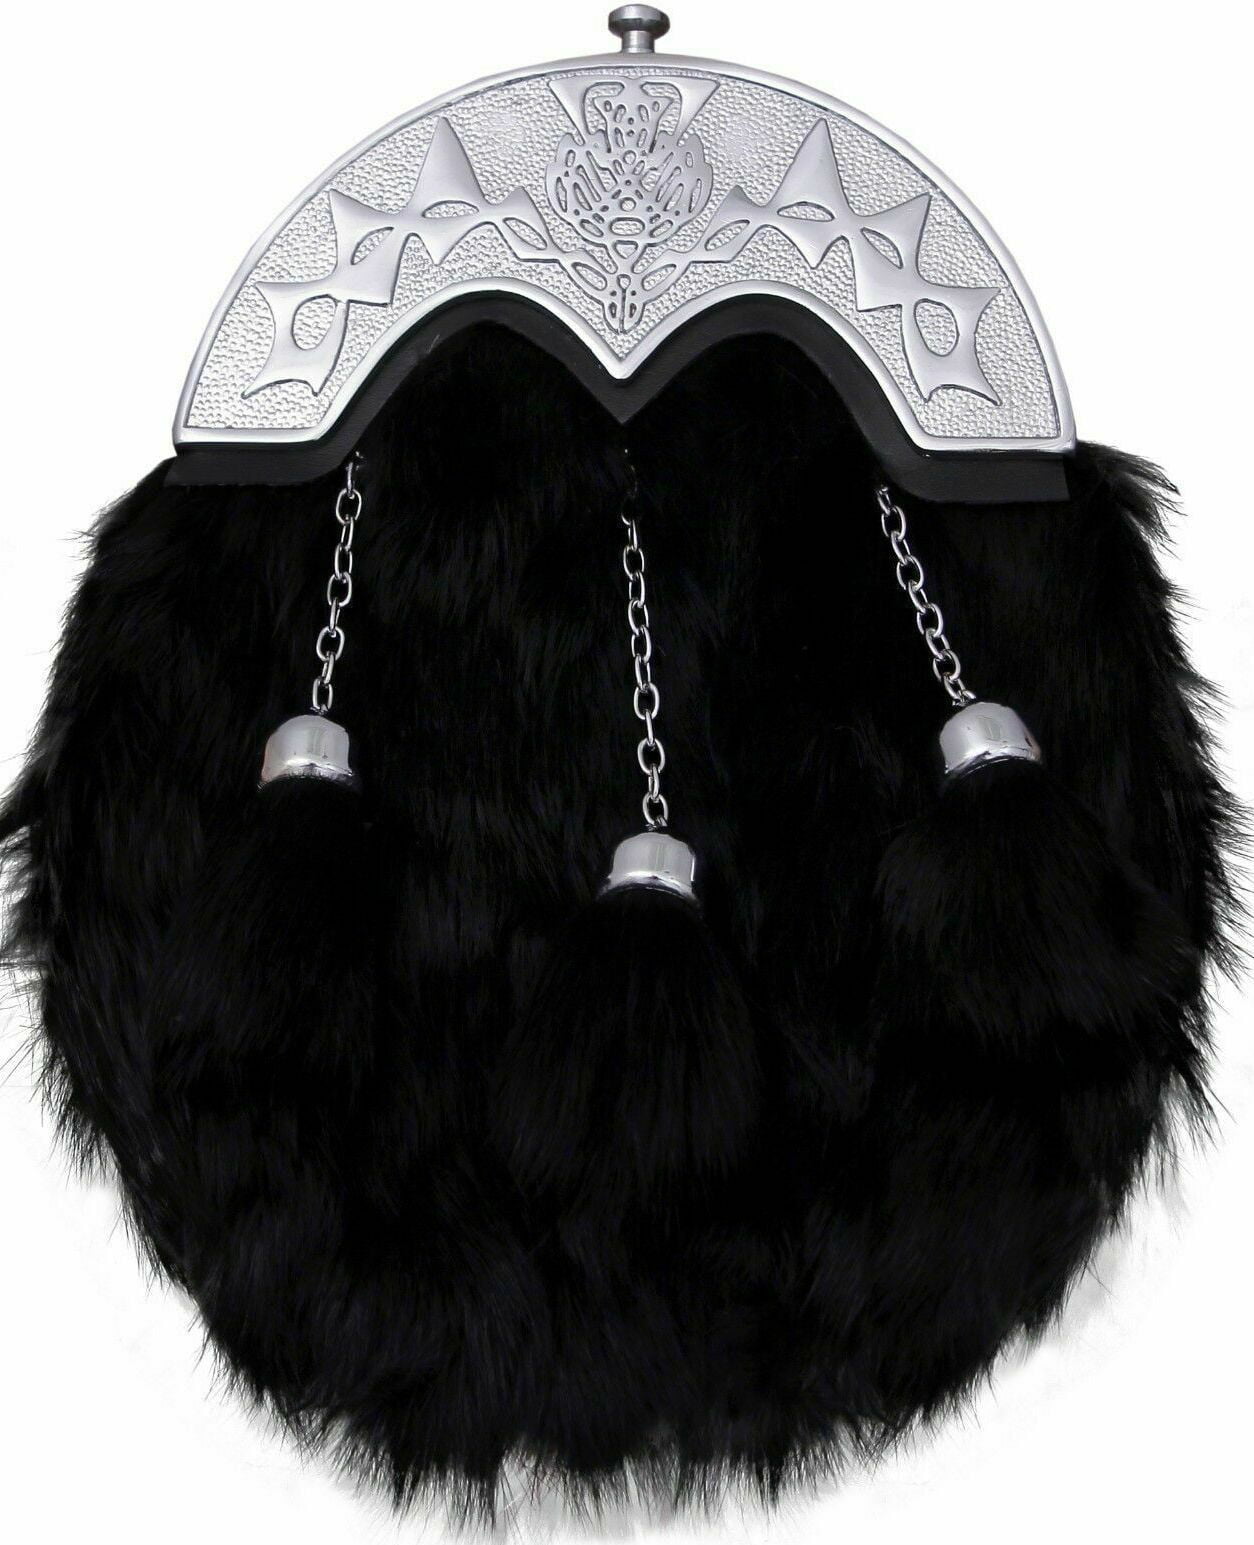 Scottish Full Dress Black & White  Rabbit Fur Celtic Cantle Thistle Kilt Sporran